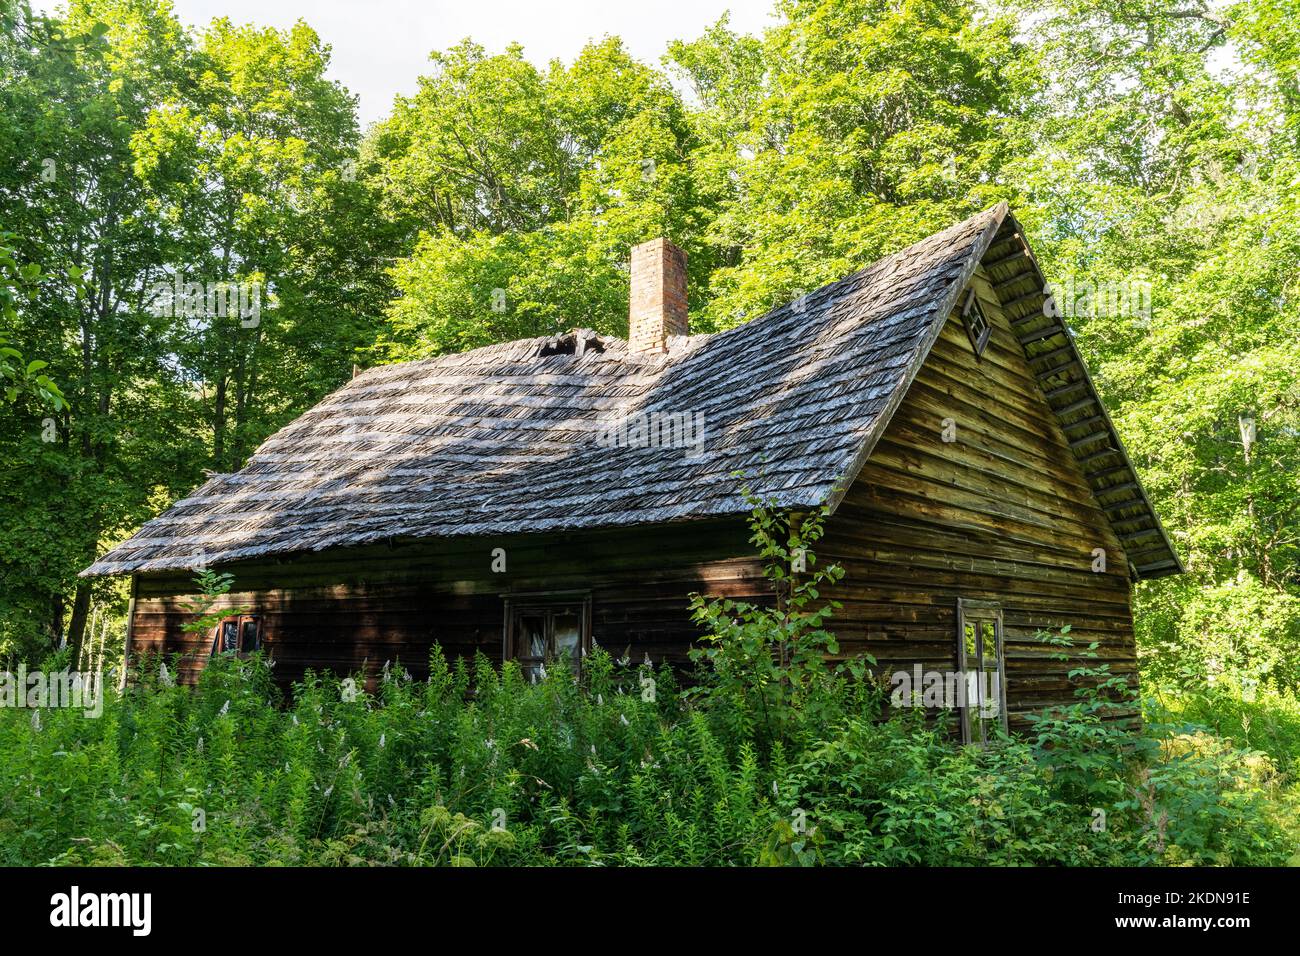 Un ancien bâtiment en bois abandonné au milieu d'une forêt luxuriante dans le parc national de Soomaa, en Estonie Banque D'Images